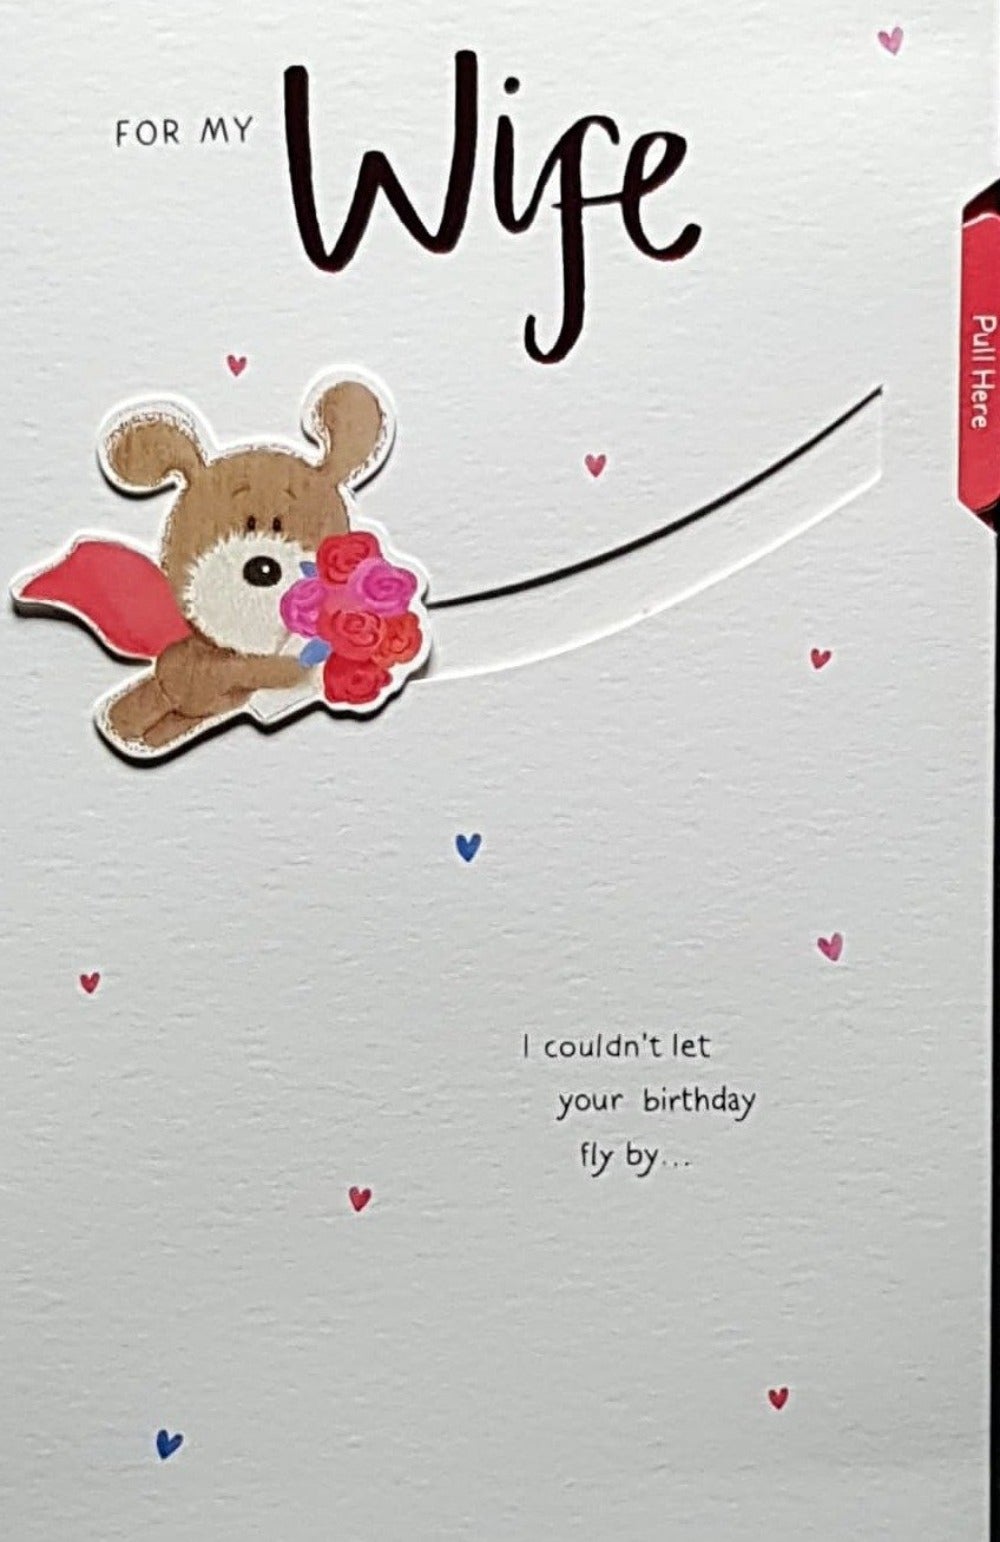 Birthday Card - Wife / Cute Teddy Flying Upwards With A Bouquet